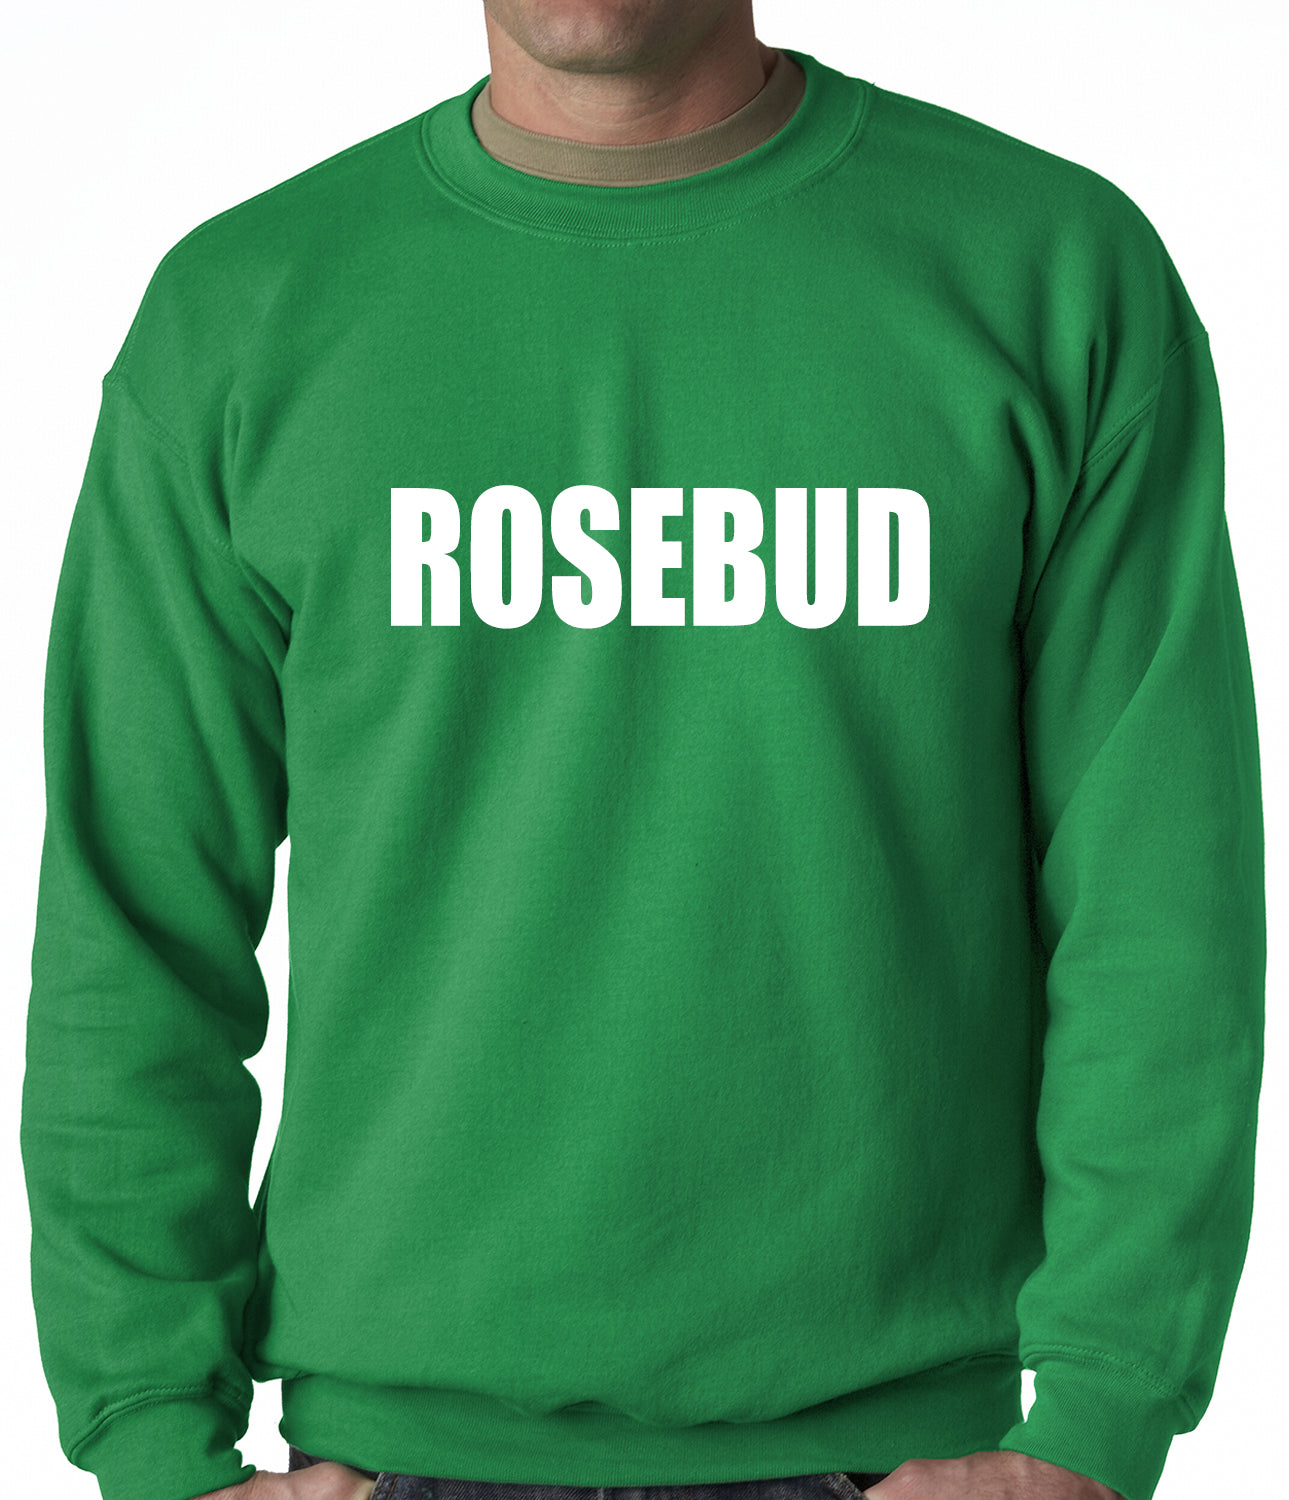 Rosebud Adult Crewneck